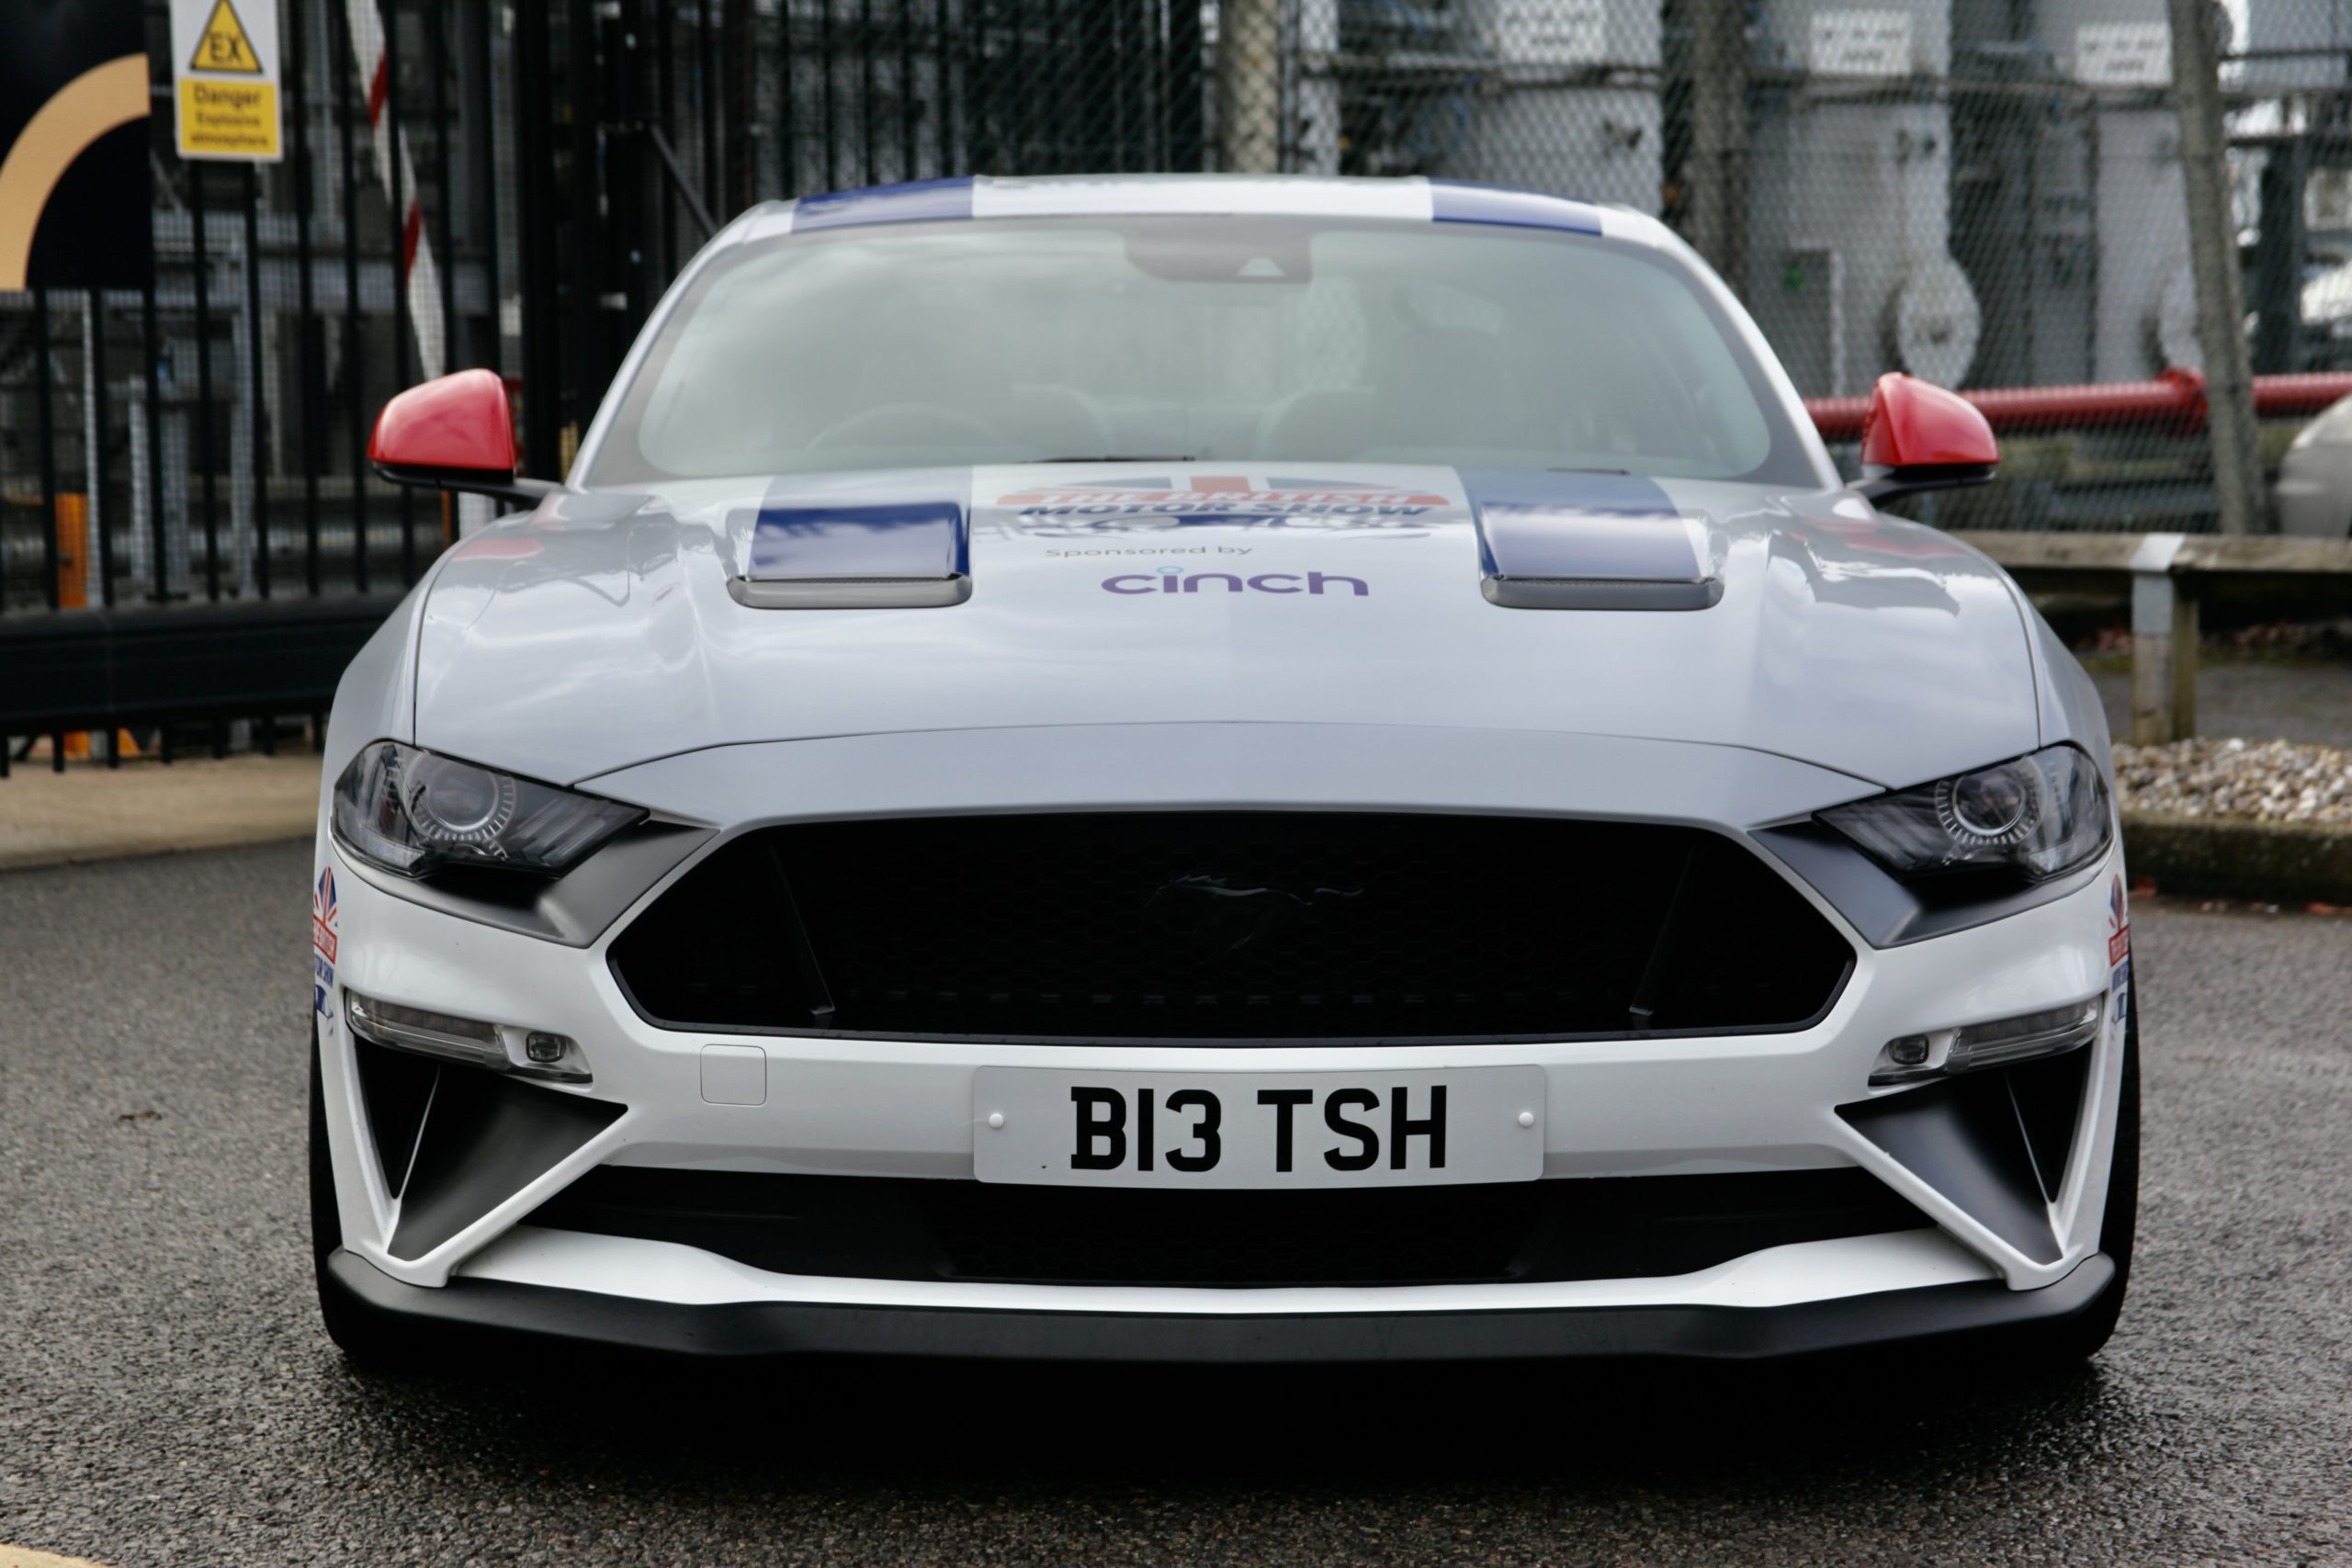 The British Motor Show Mustang at Coryton